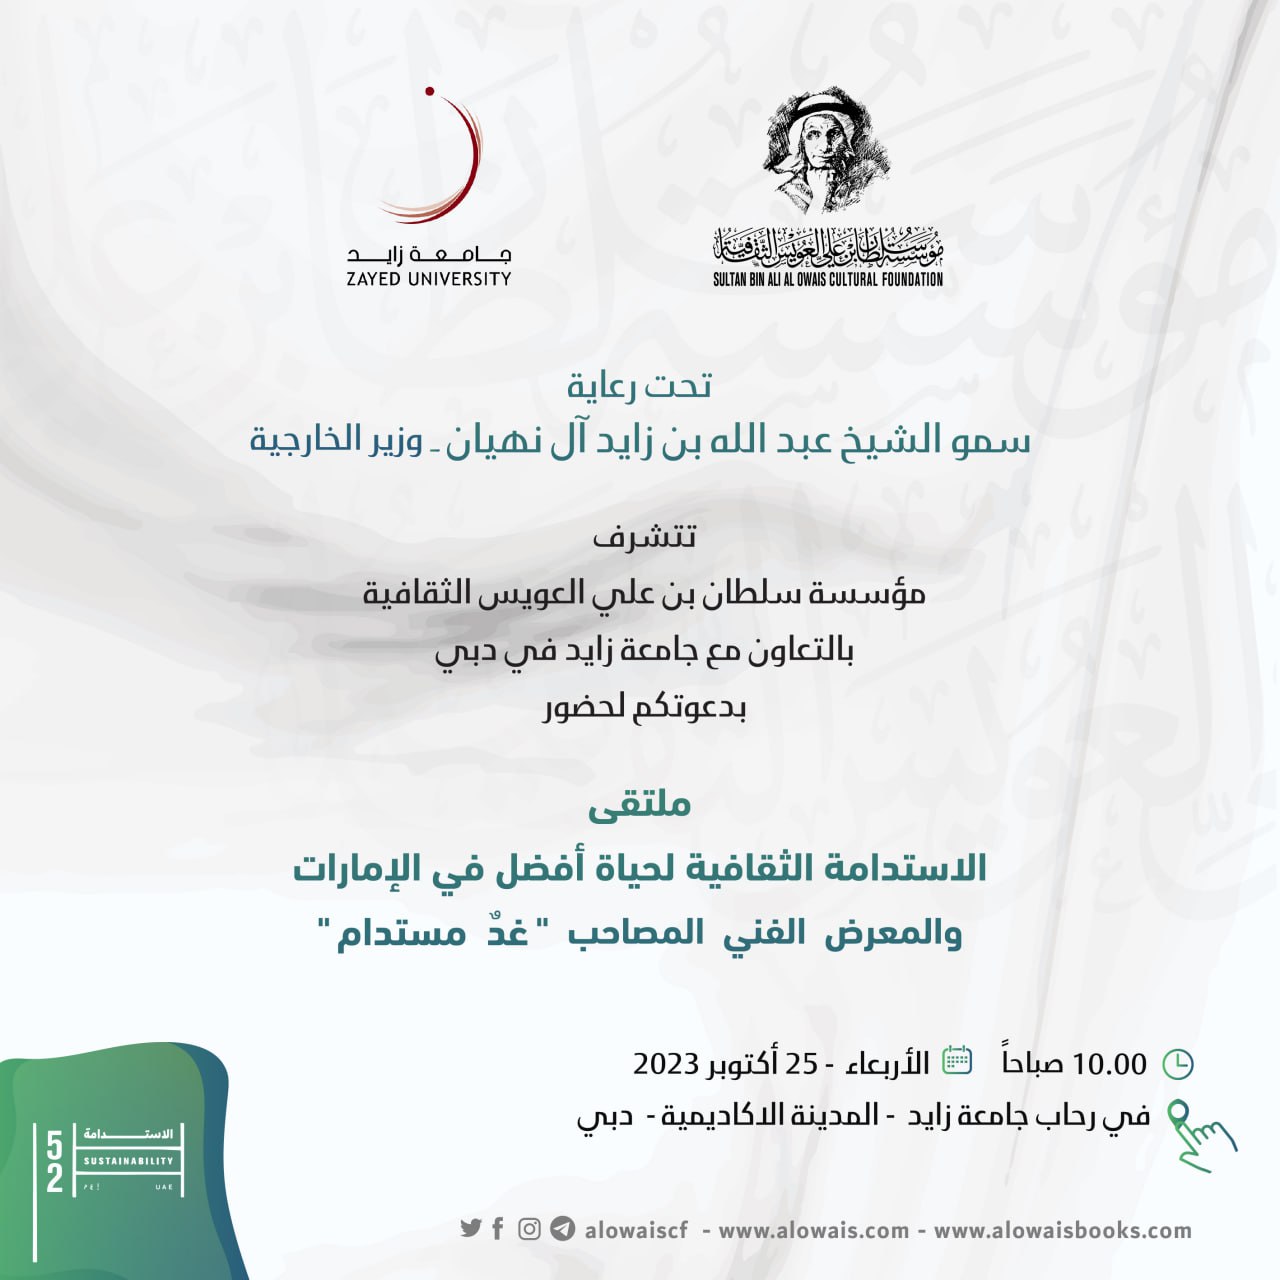 مؤسسة العويس وجامعة زايد تنظمان ملتقى الاستدامة الثقافية في دبي

